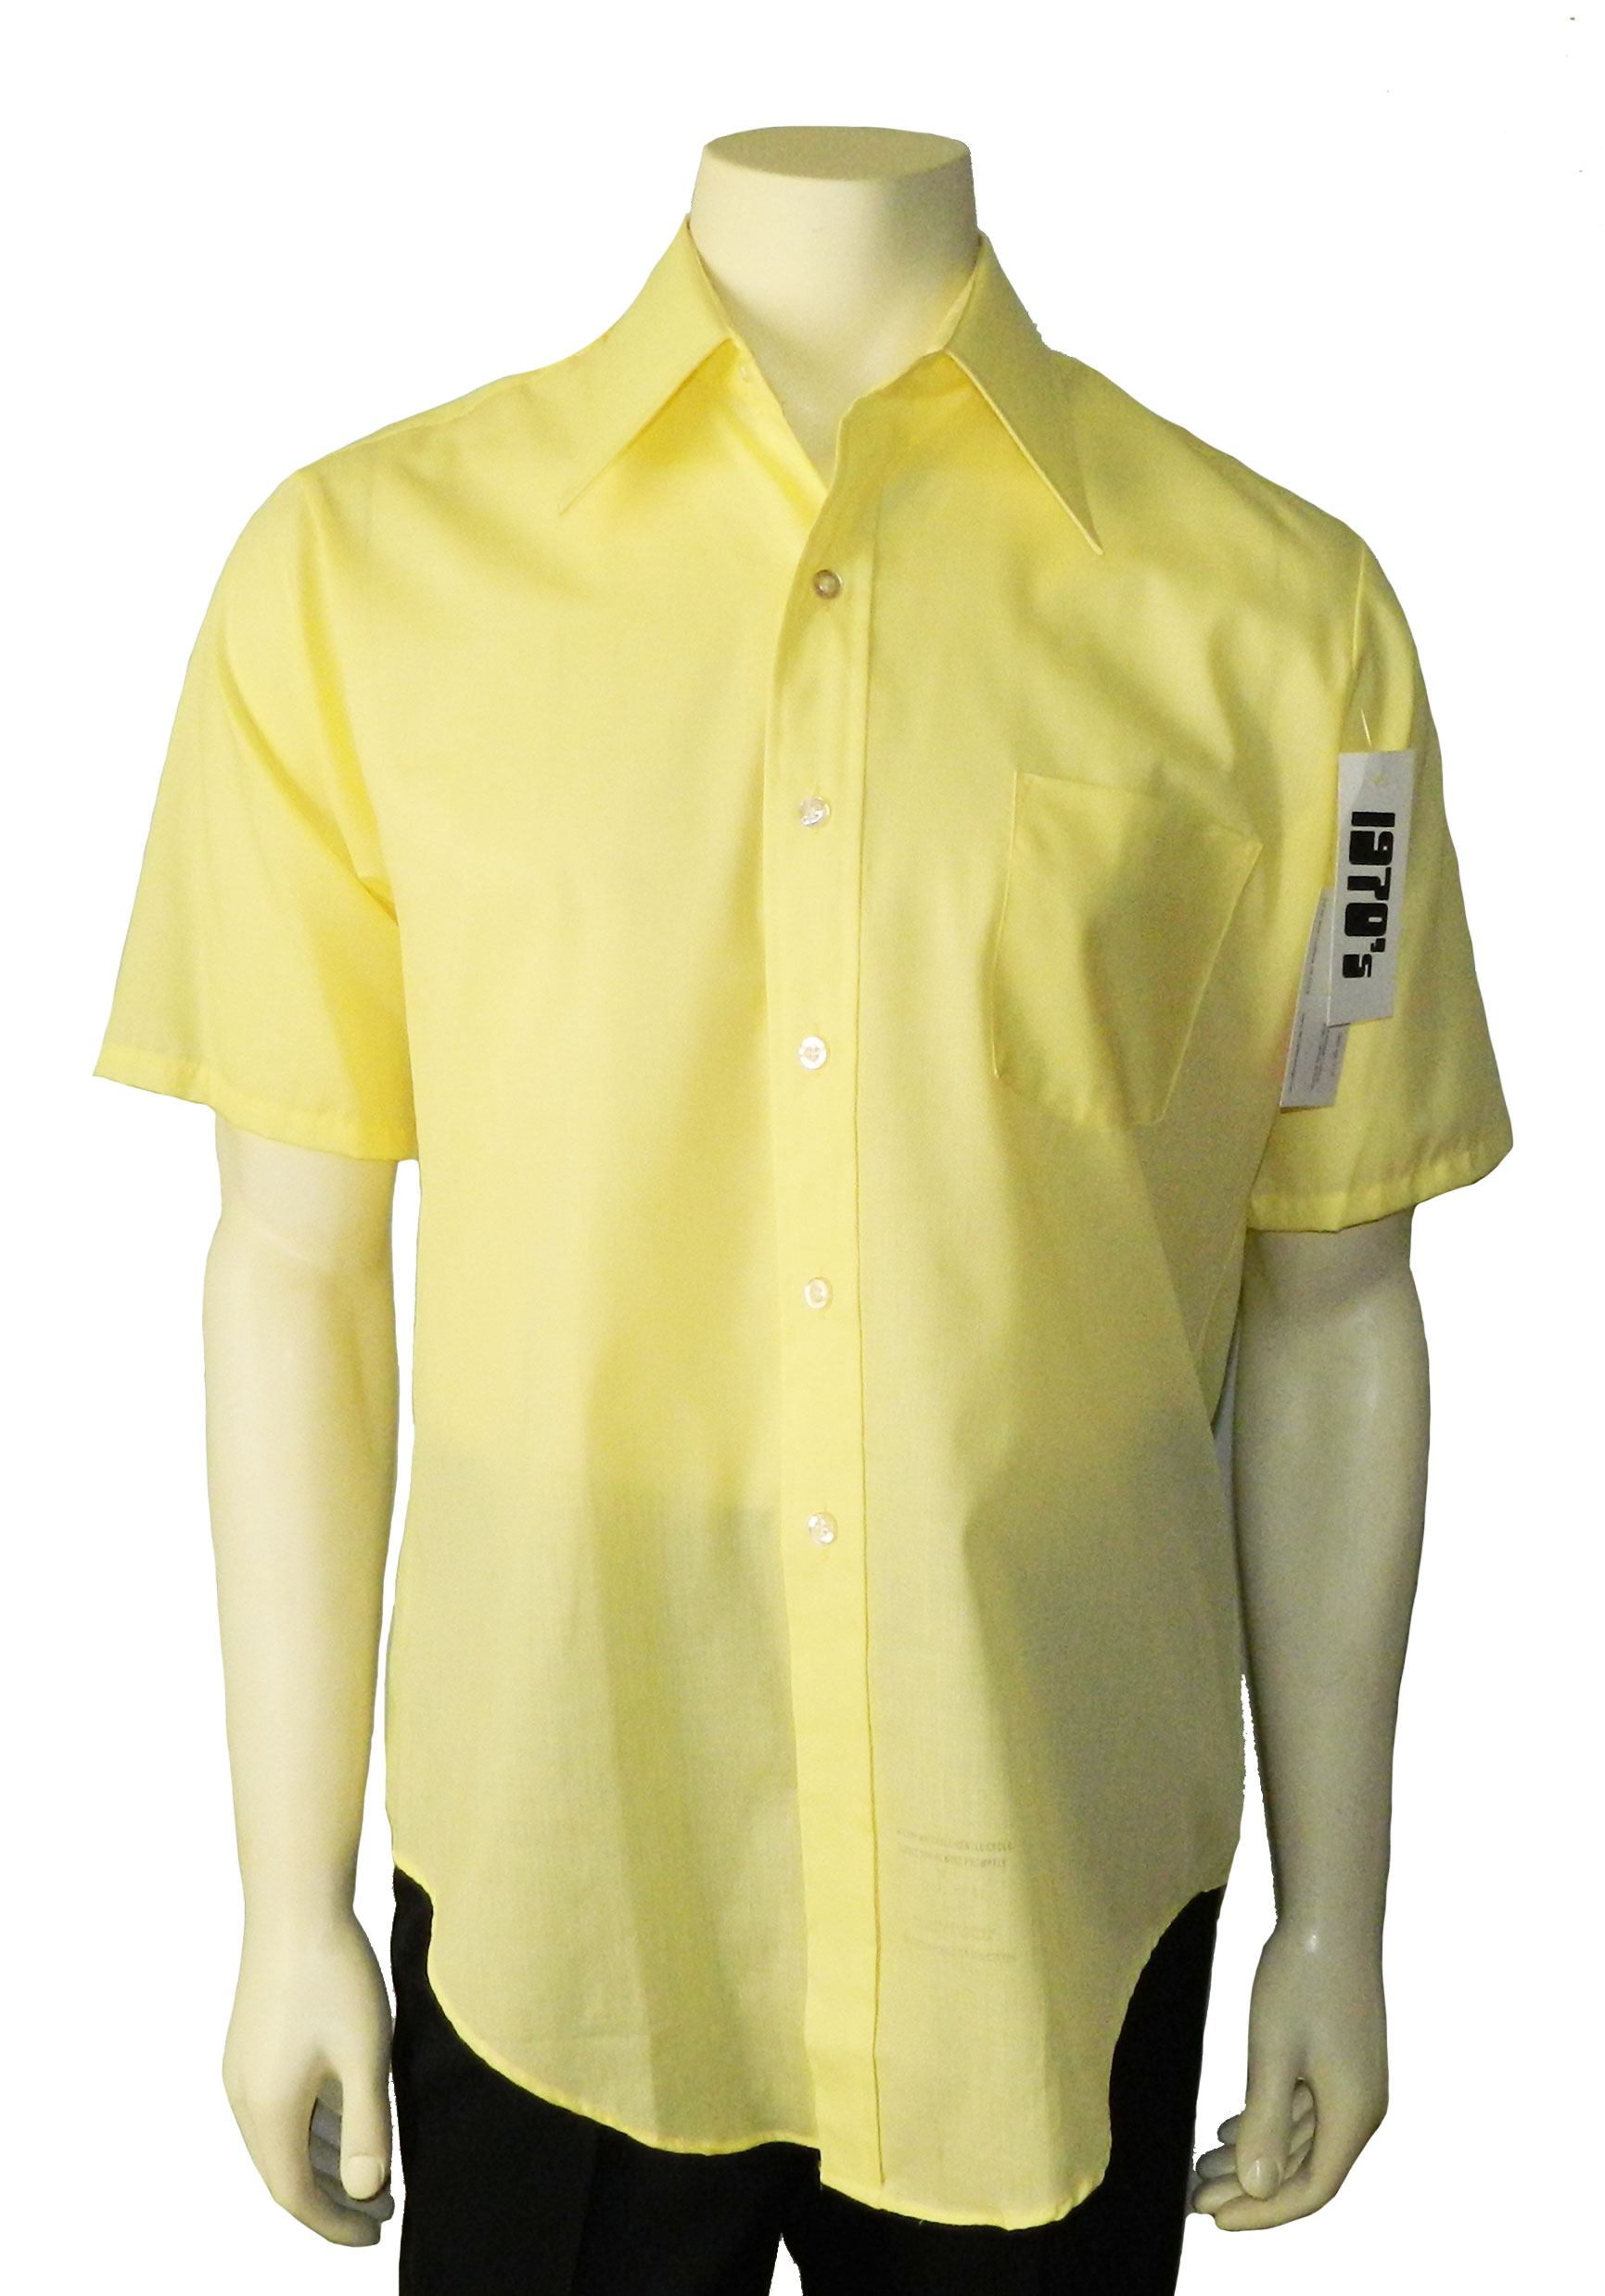 1970s short sleeve yellow dress shirt